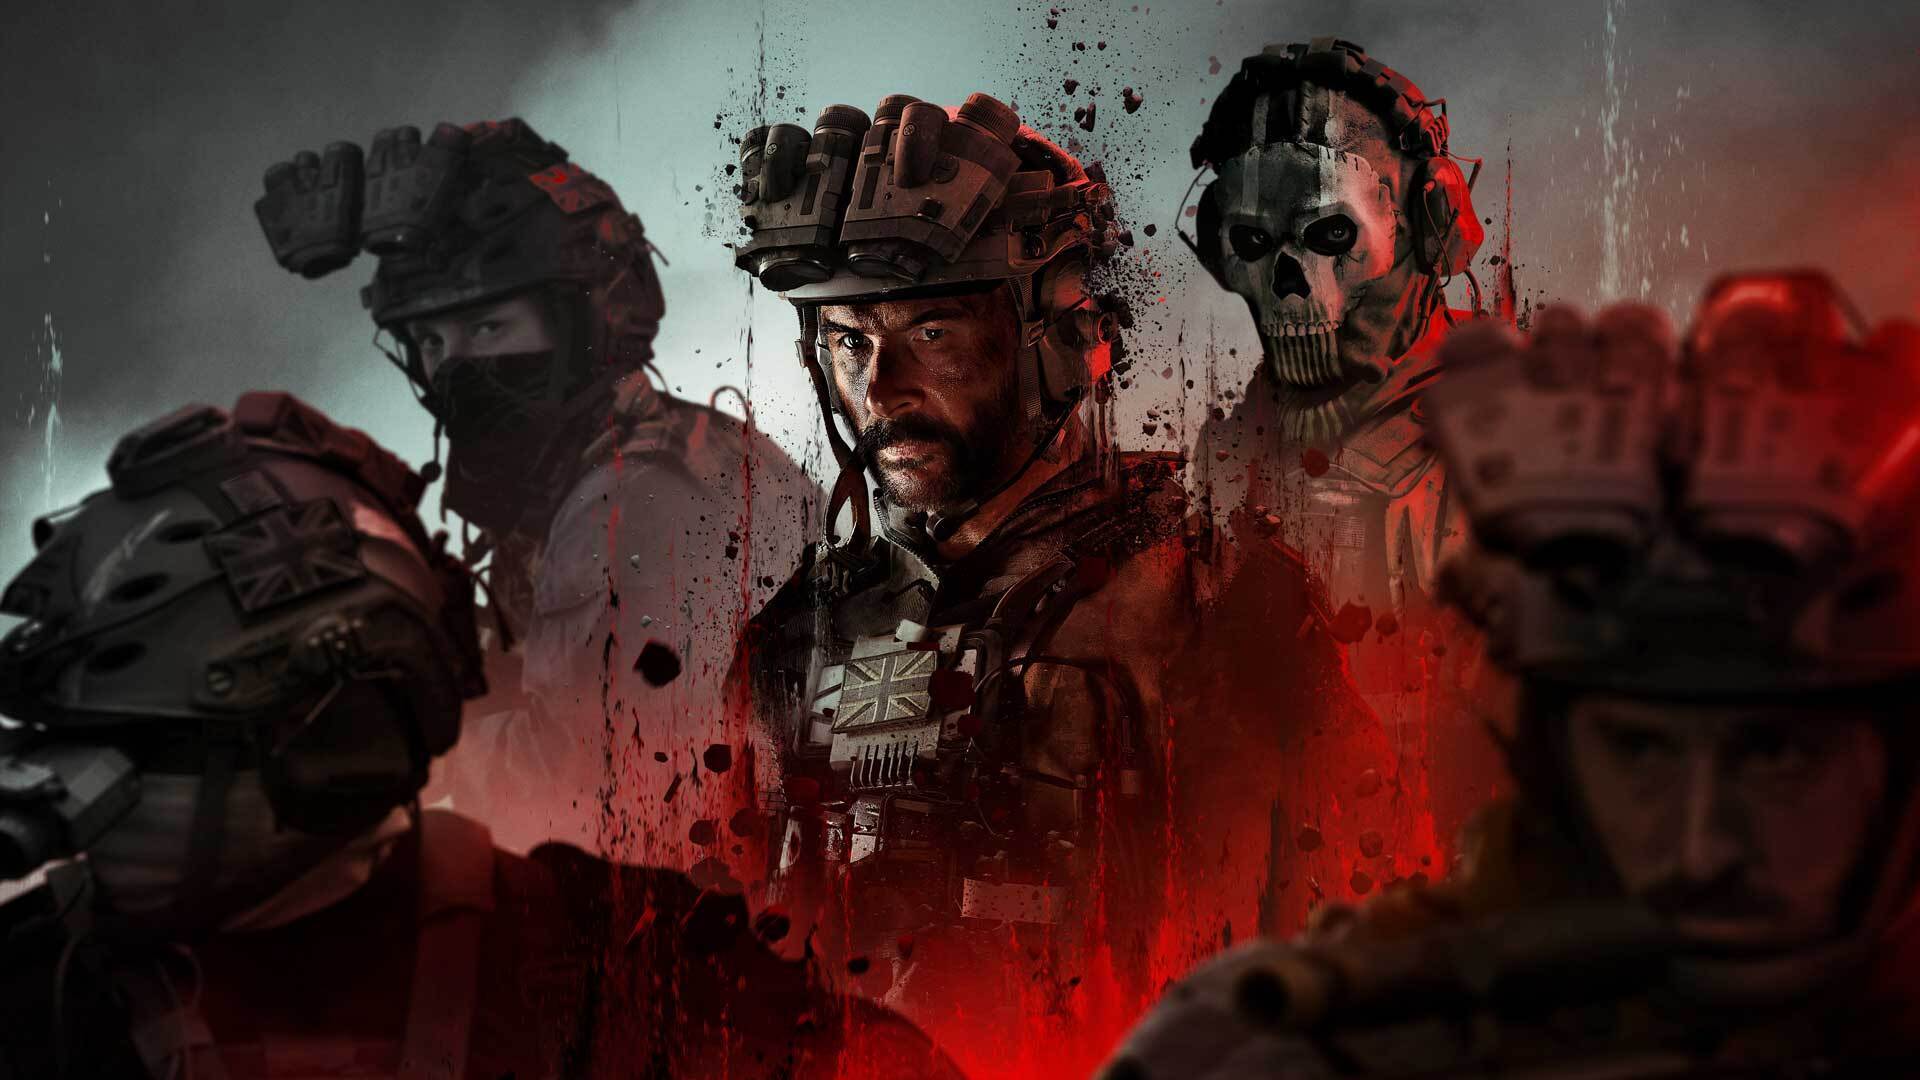 واکنش گیمرها به بخش چندنفره Call of Duty: Modern Warfare 3 عالی بوده است